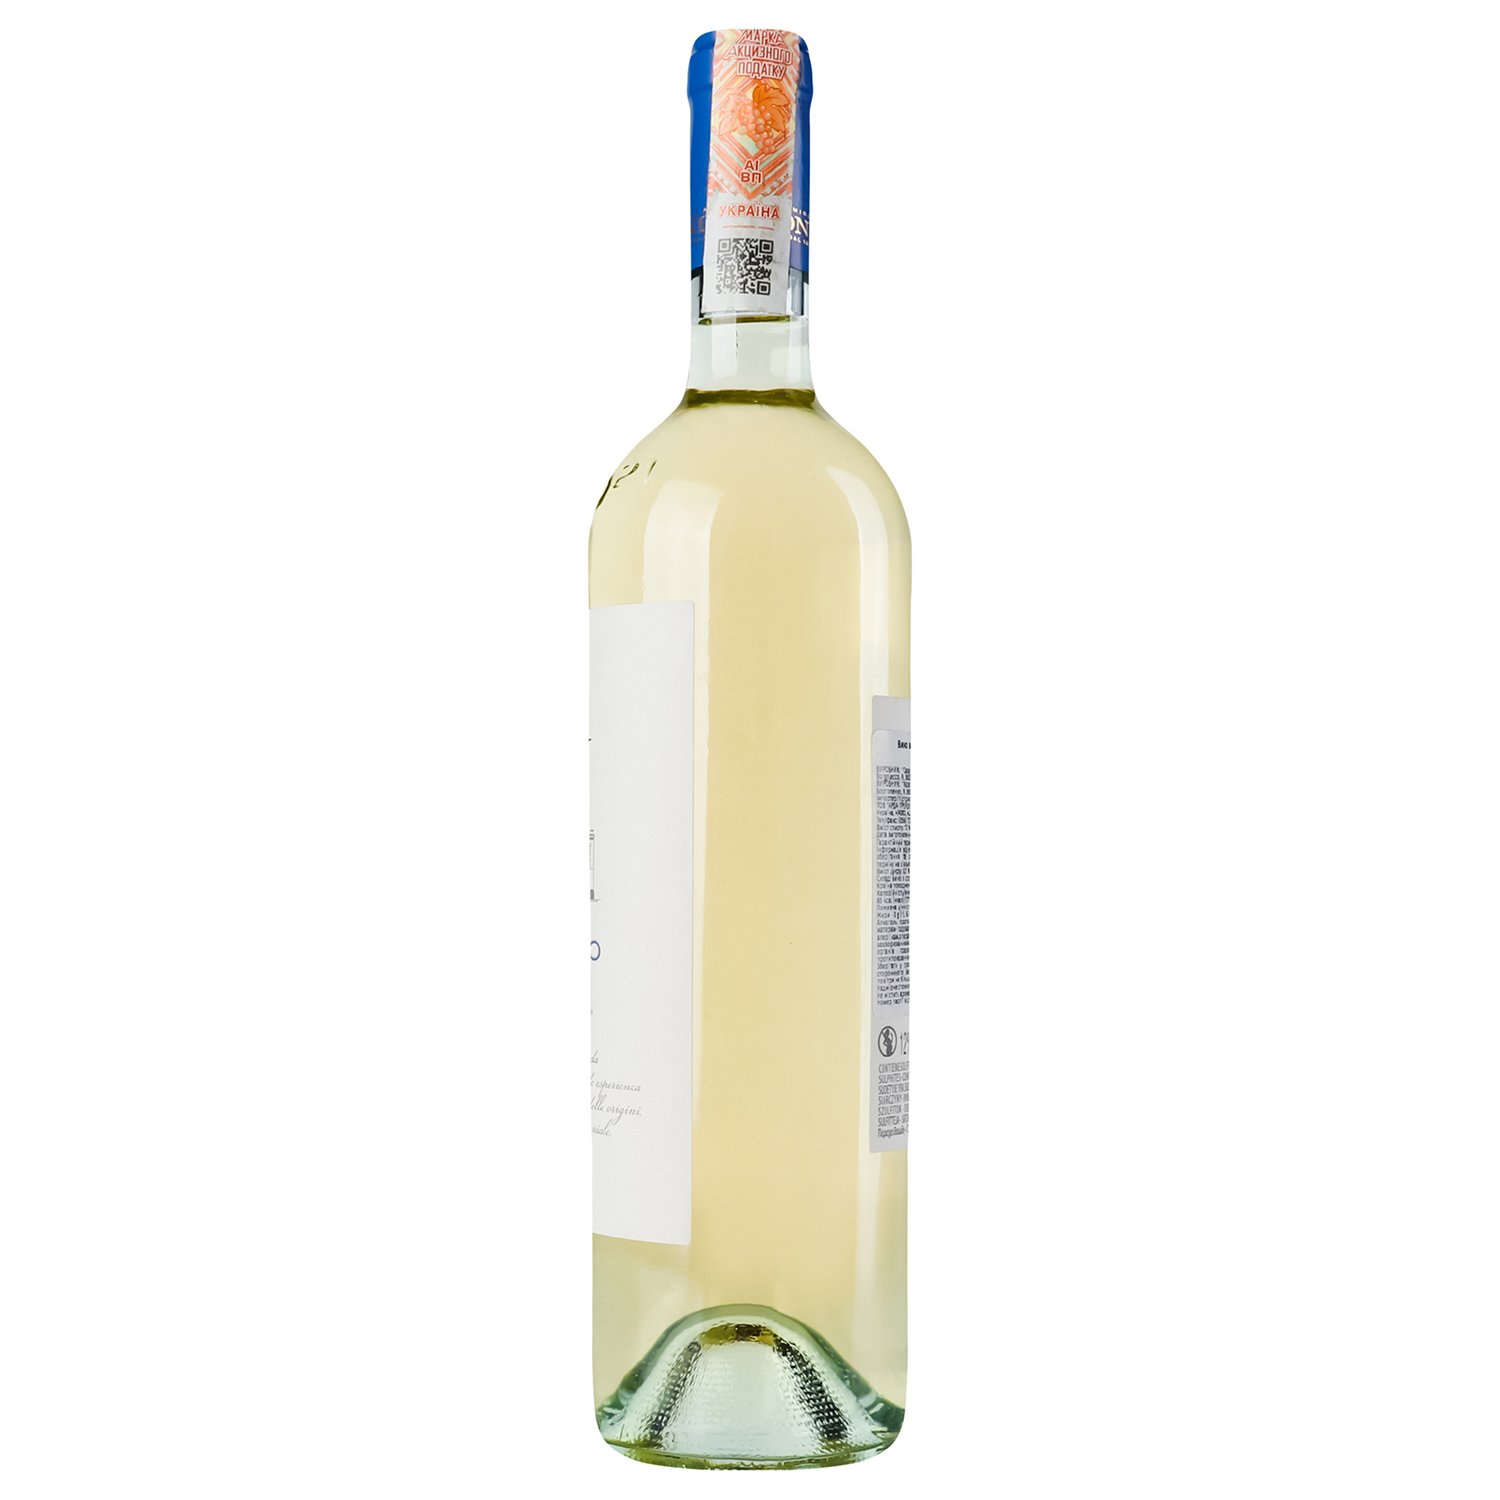 Вино Zonin Pinot Grigio IGP, белое, сухое, 13%, 0,75 л (37170) - фото 2